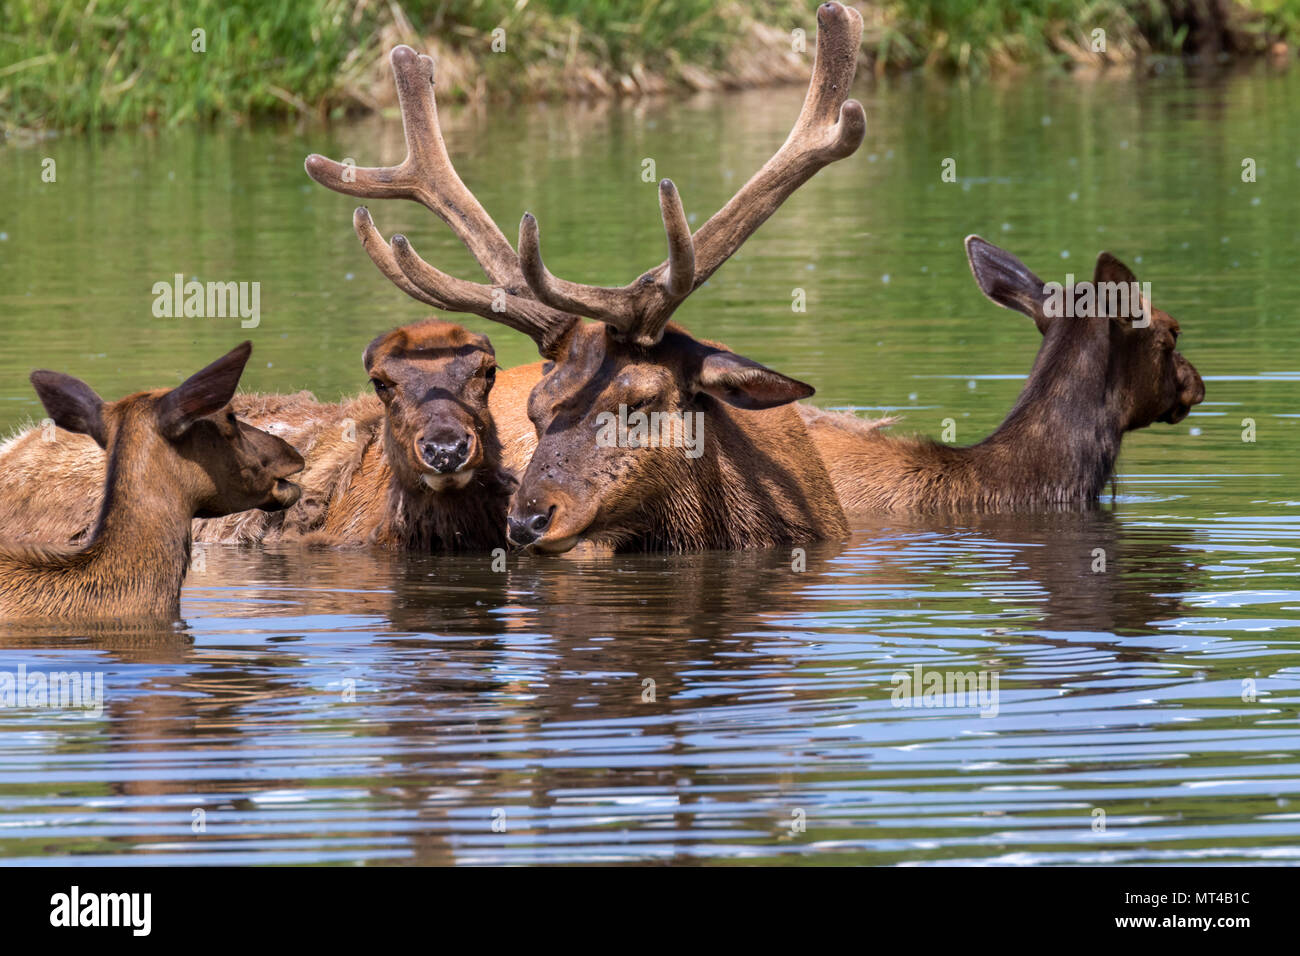 Un groupe familial de wapiti (Cervus canadensis) se baigner dans un lac au cours de chaude journée d'été, Iowa, États-Unis. Banque D'Images